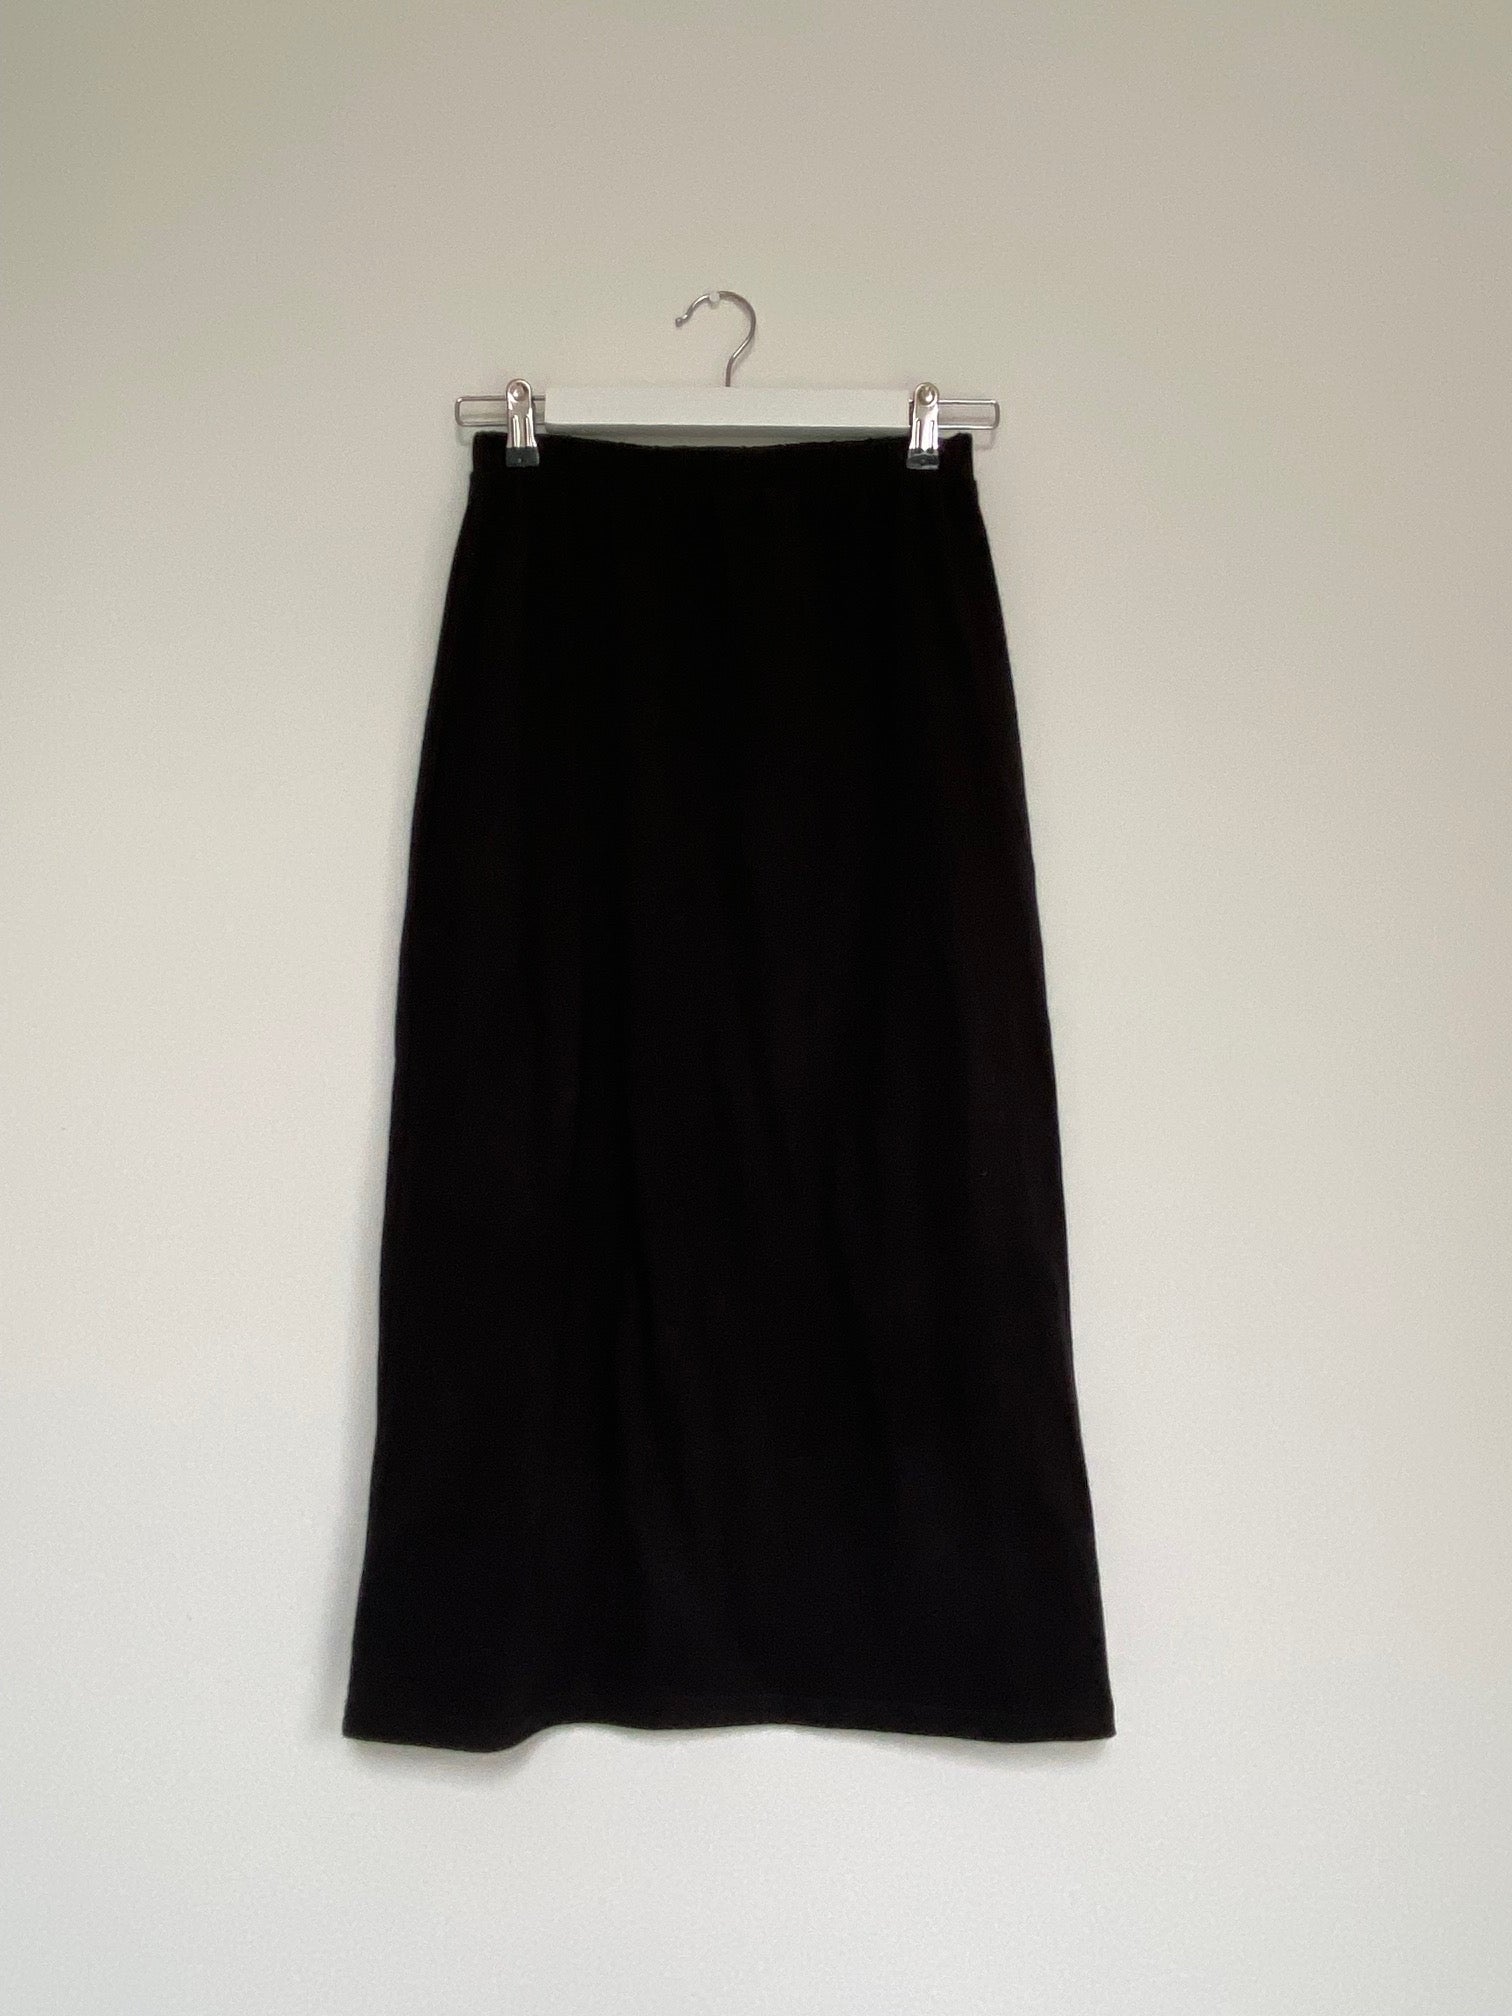 Valentina Skirt in Black Size S